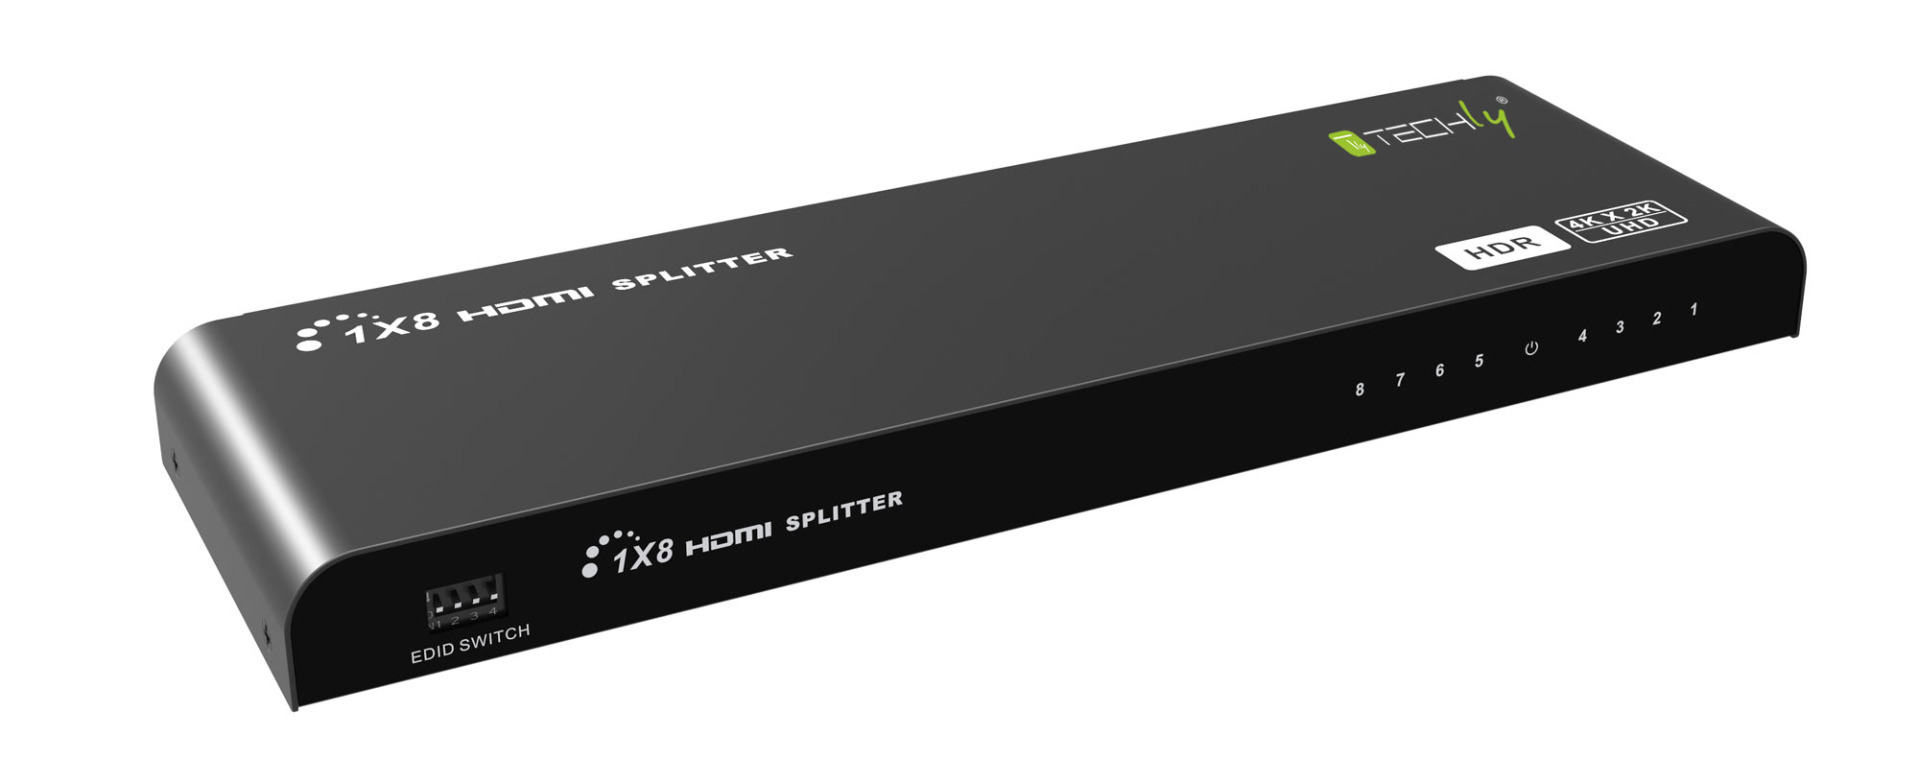 HDMI Splitter 4K 8 Port, HDR, 4K2K 60Hz,